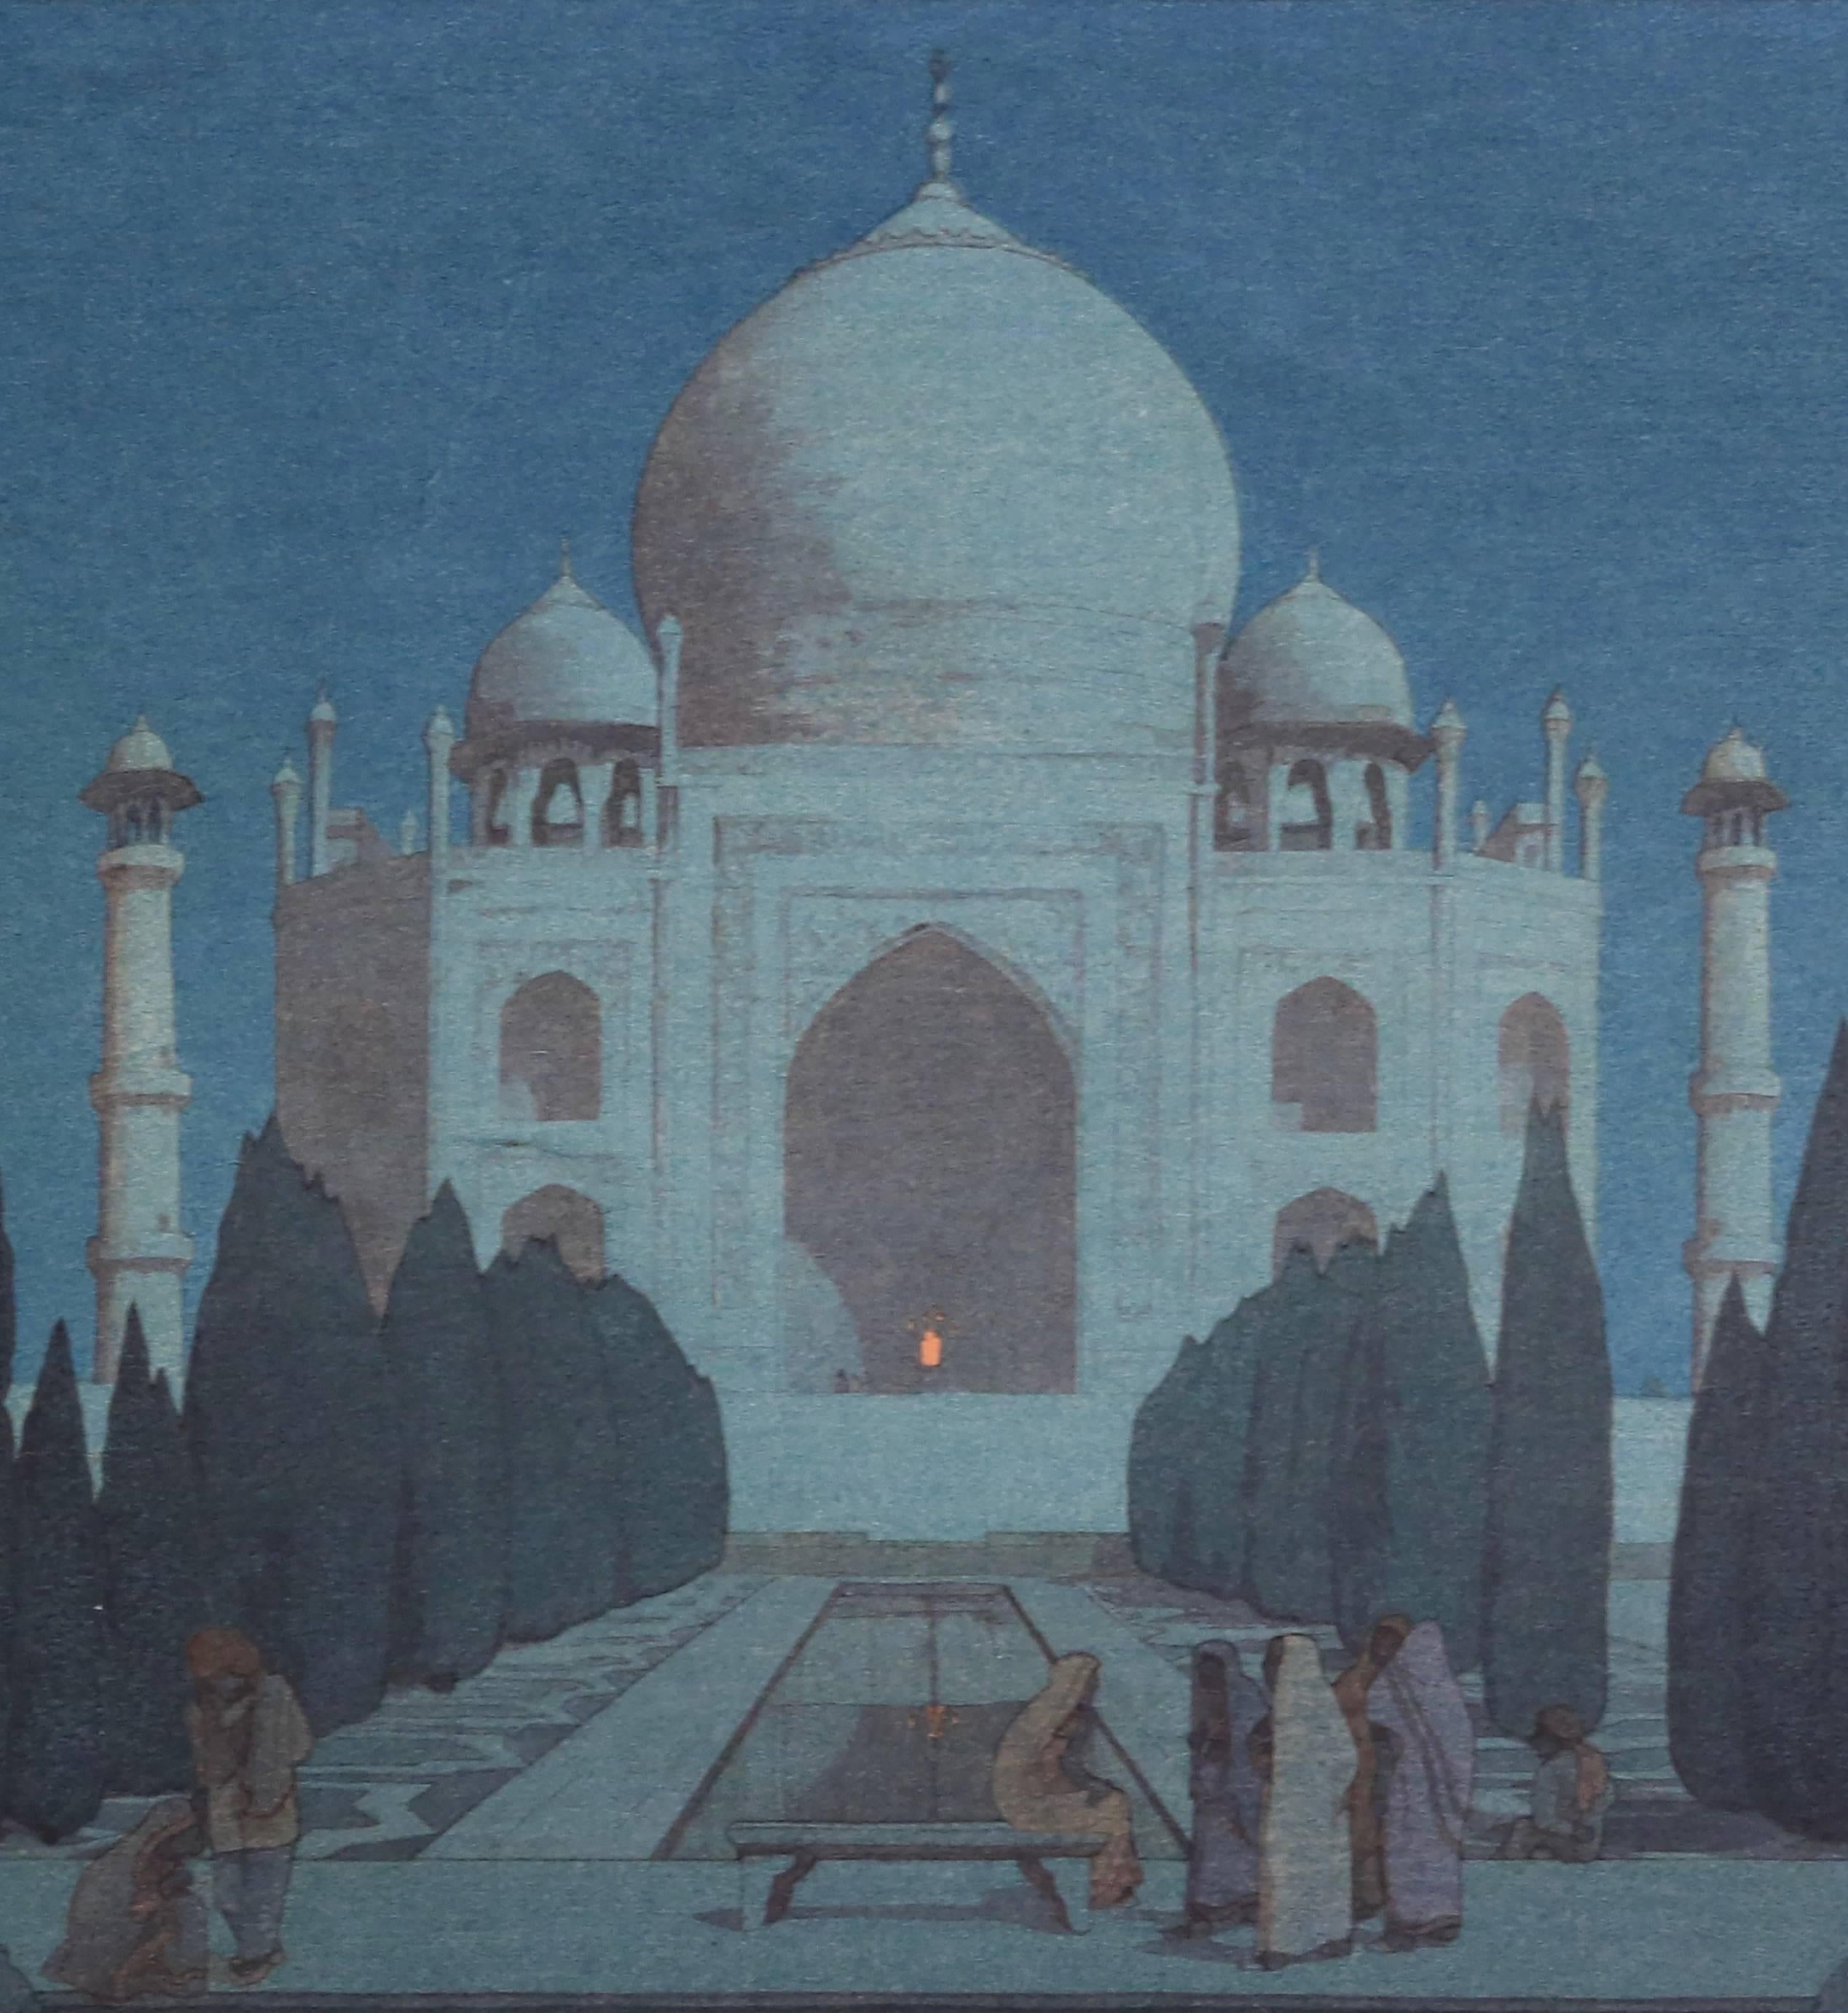 Night in Taj Mahal No. 6 - Print by Hiroshi Yoshida